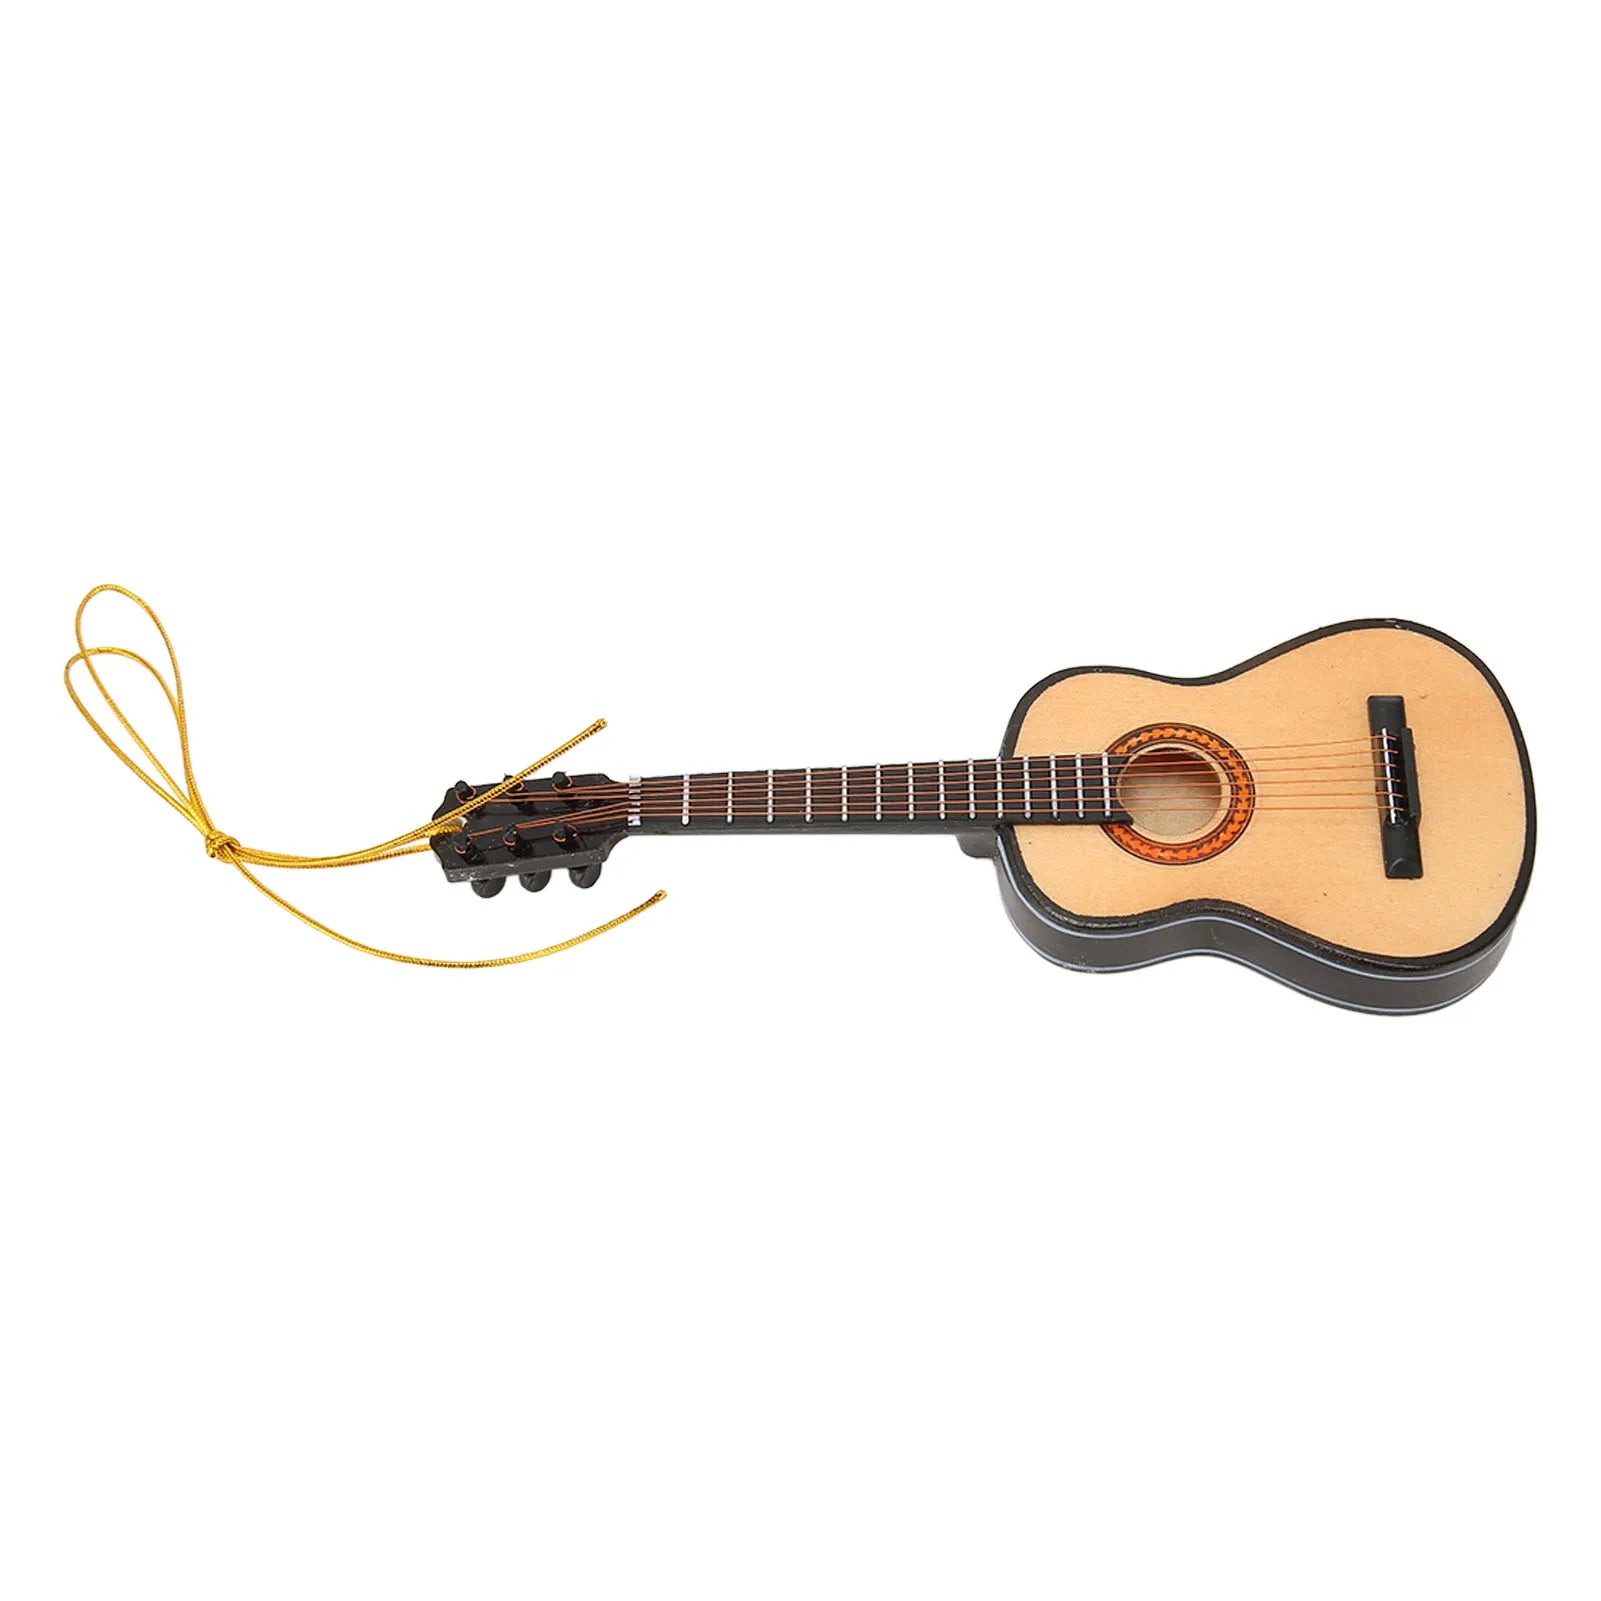 wooden-miniature-guitar-christmas-ornament.jpg